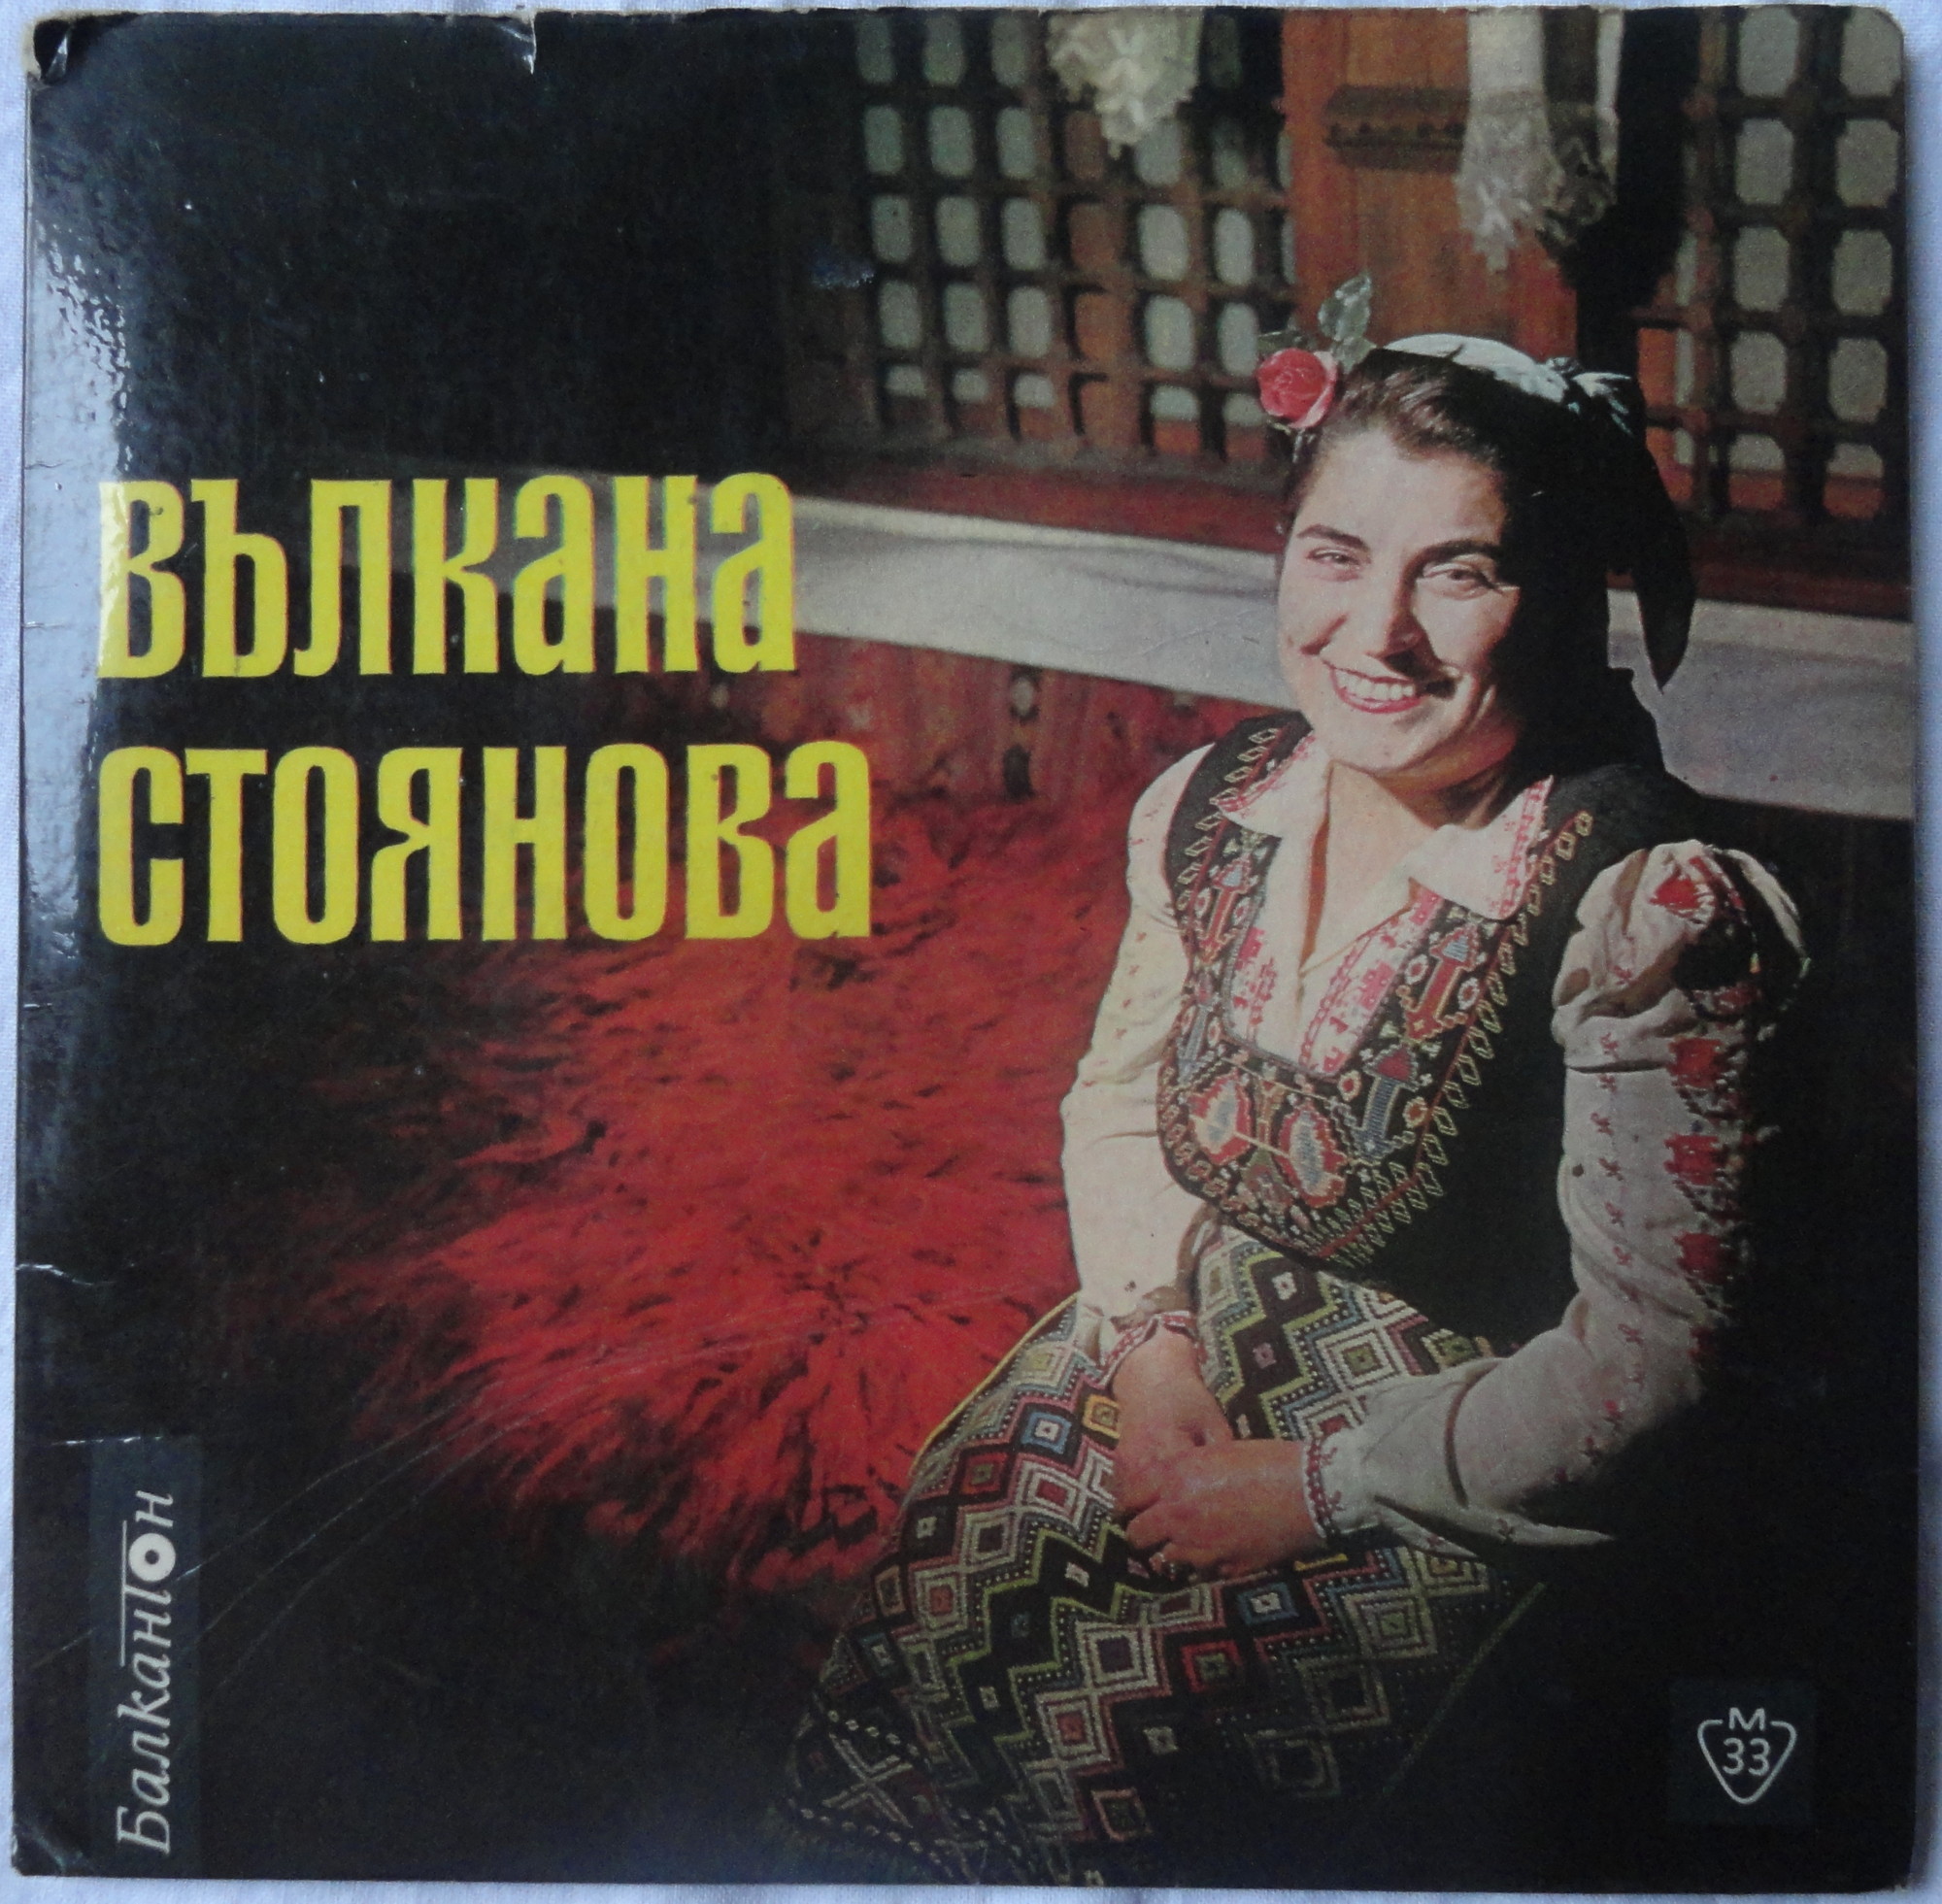 Изпълнения на народната певица Вълкана Стоянова